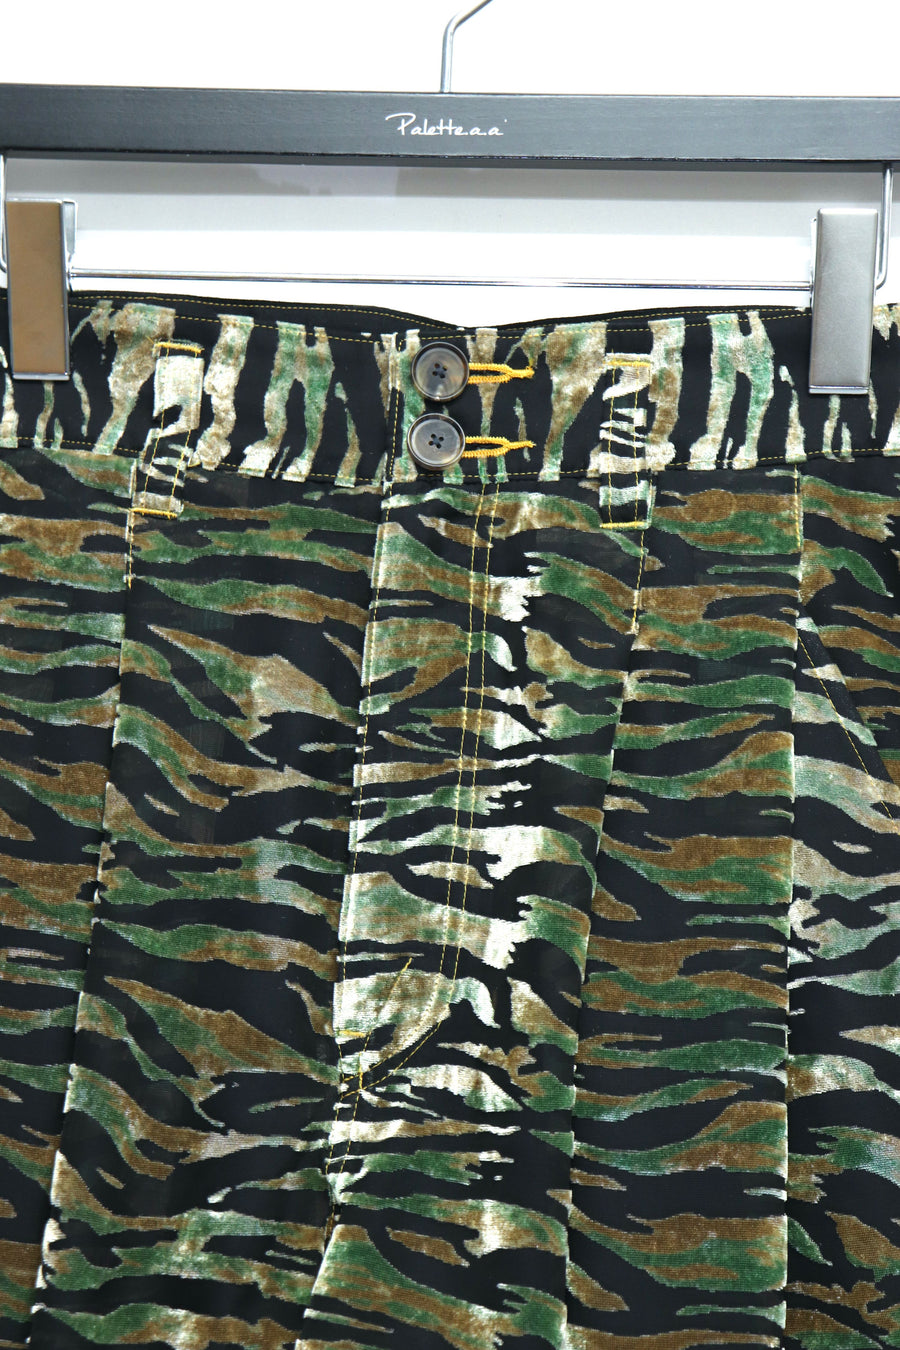 BED j.w. FORD  Velvet Cargo Shorts